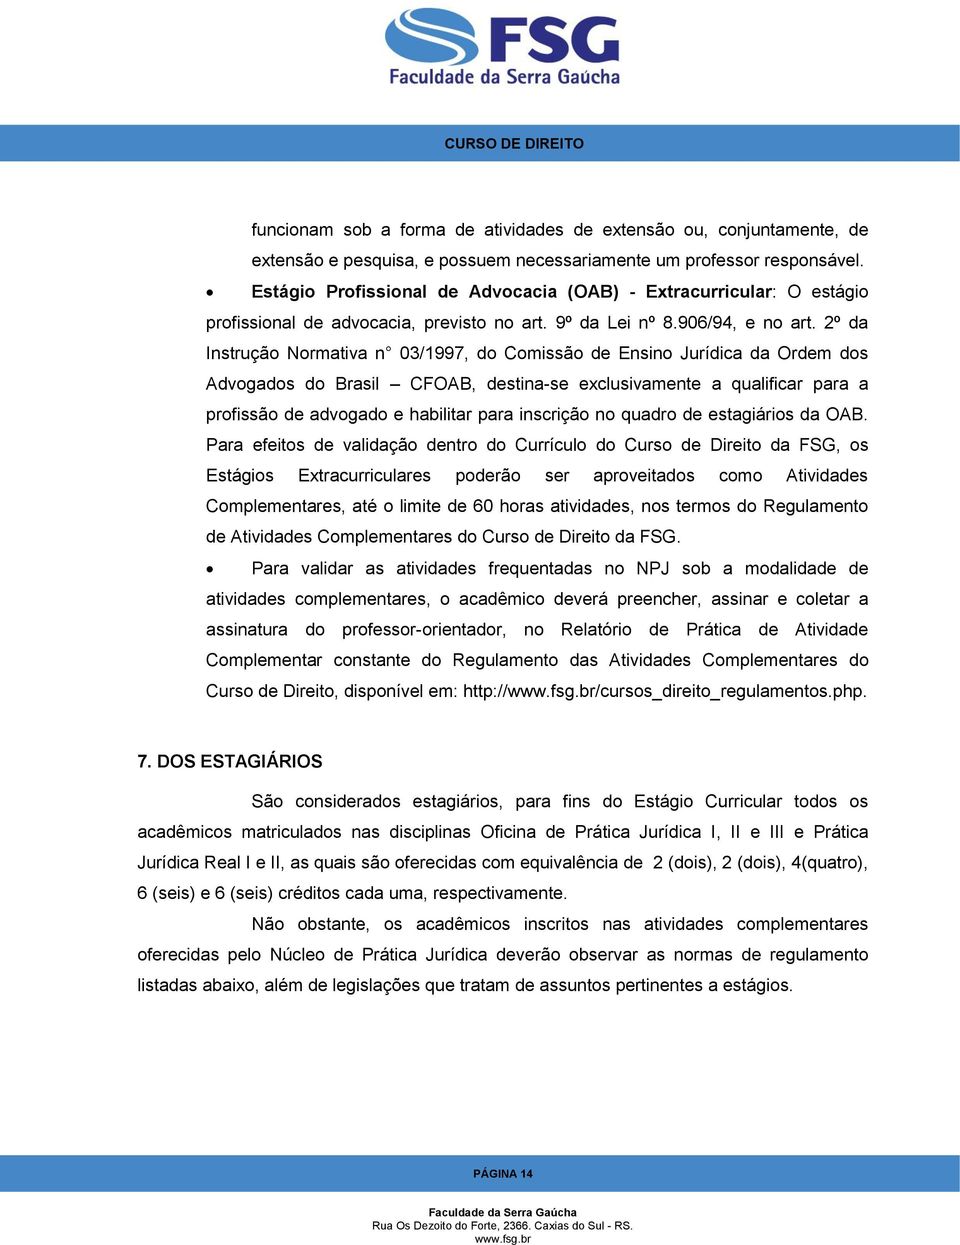 2º da Instrução Normativa n 03/1997, do Comissão de Ensino Jurídica da Ordem dos Advogados do Brasil CFOAB, destina-se exclusivamente a qualificar para a profissão de advogado e habilitar para